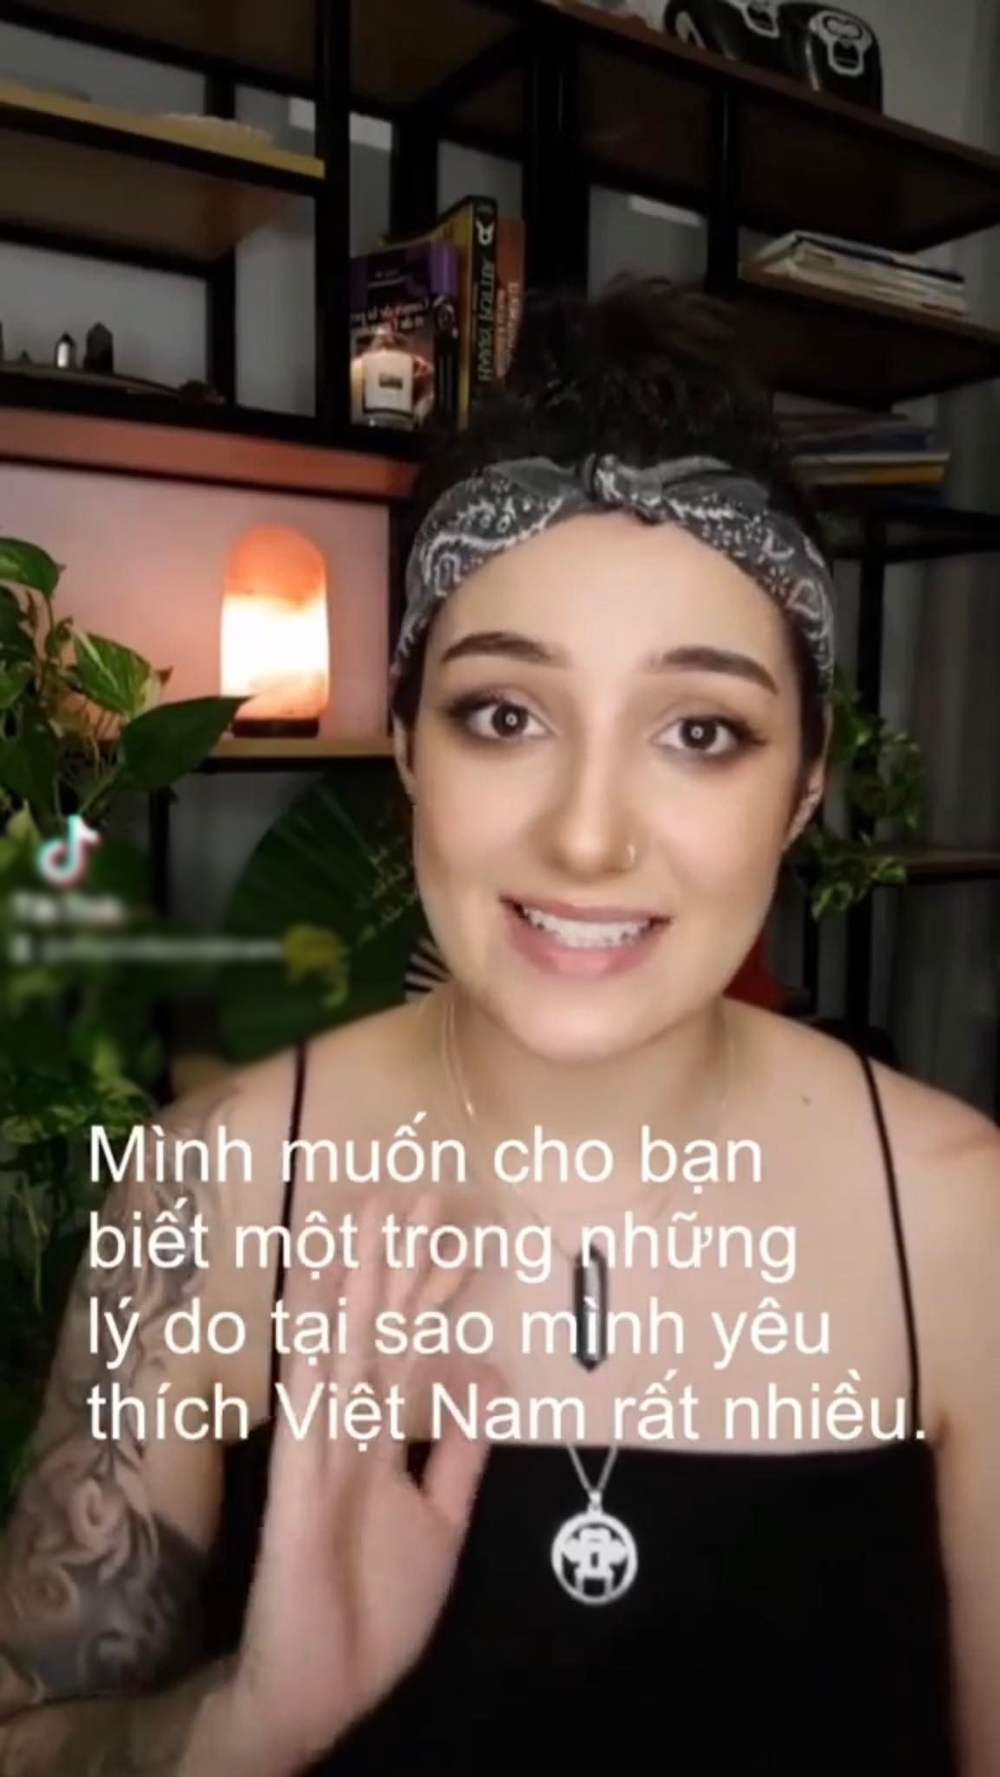  
Cô gái chia sẻ lý do vì sao lại yêu thích Việt Nam. (Ảnh: Chụp màn hình)